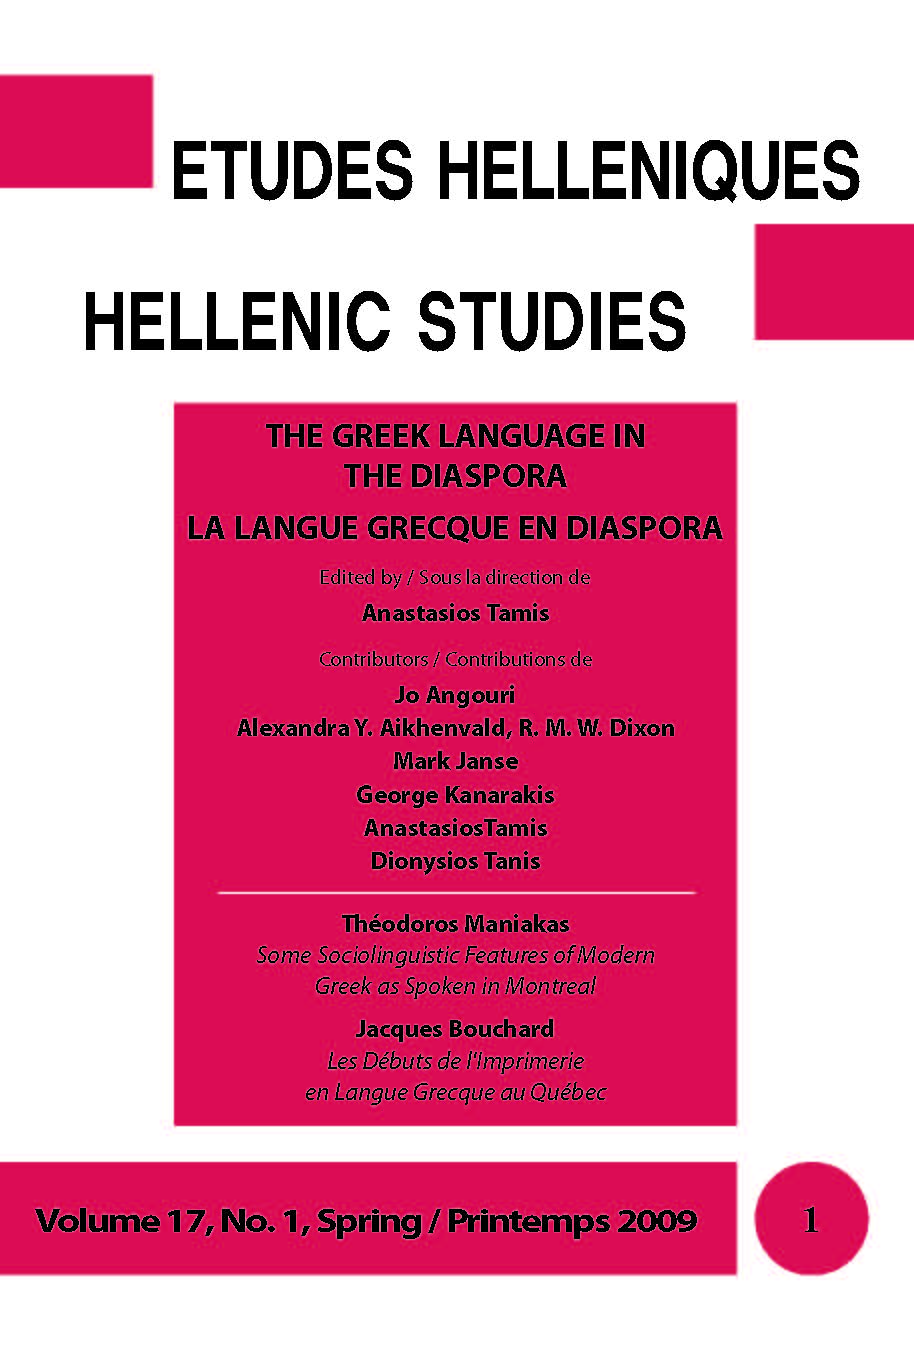 Études helléniques / Hellenic Studies, Volume 17, No 1, 2009, cover